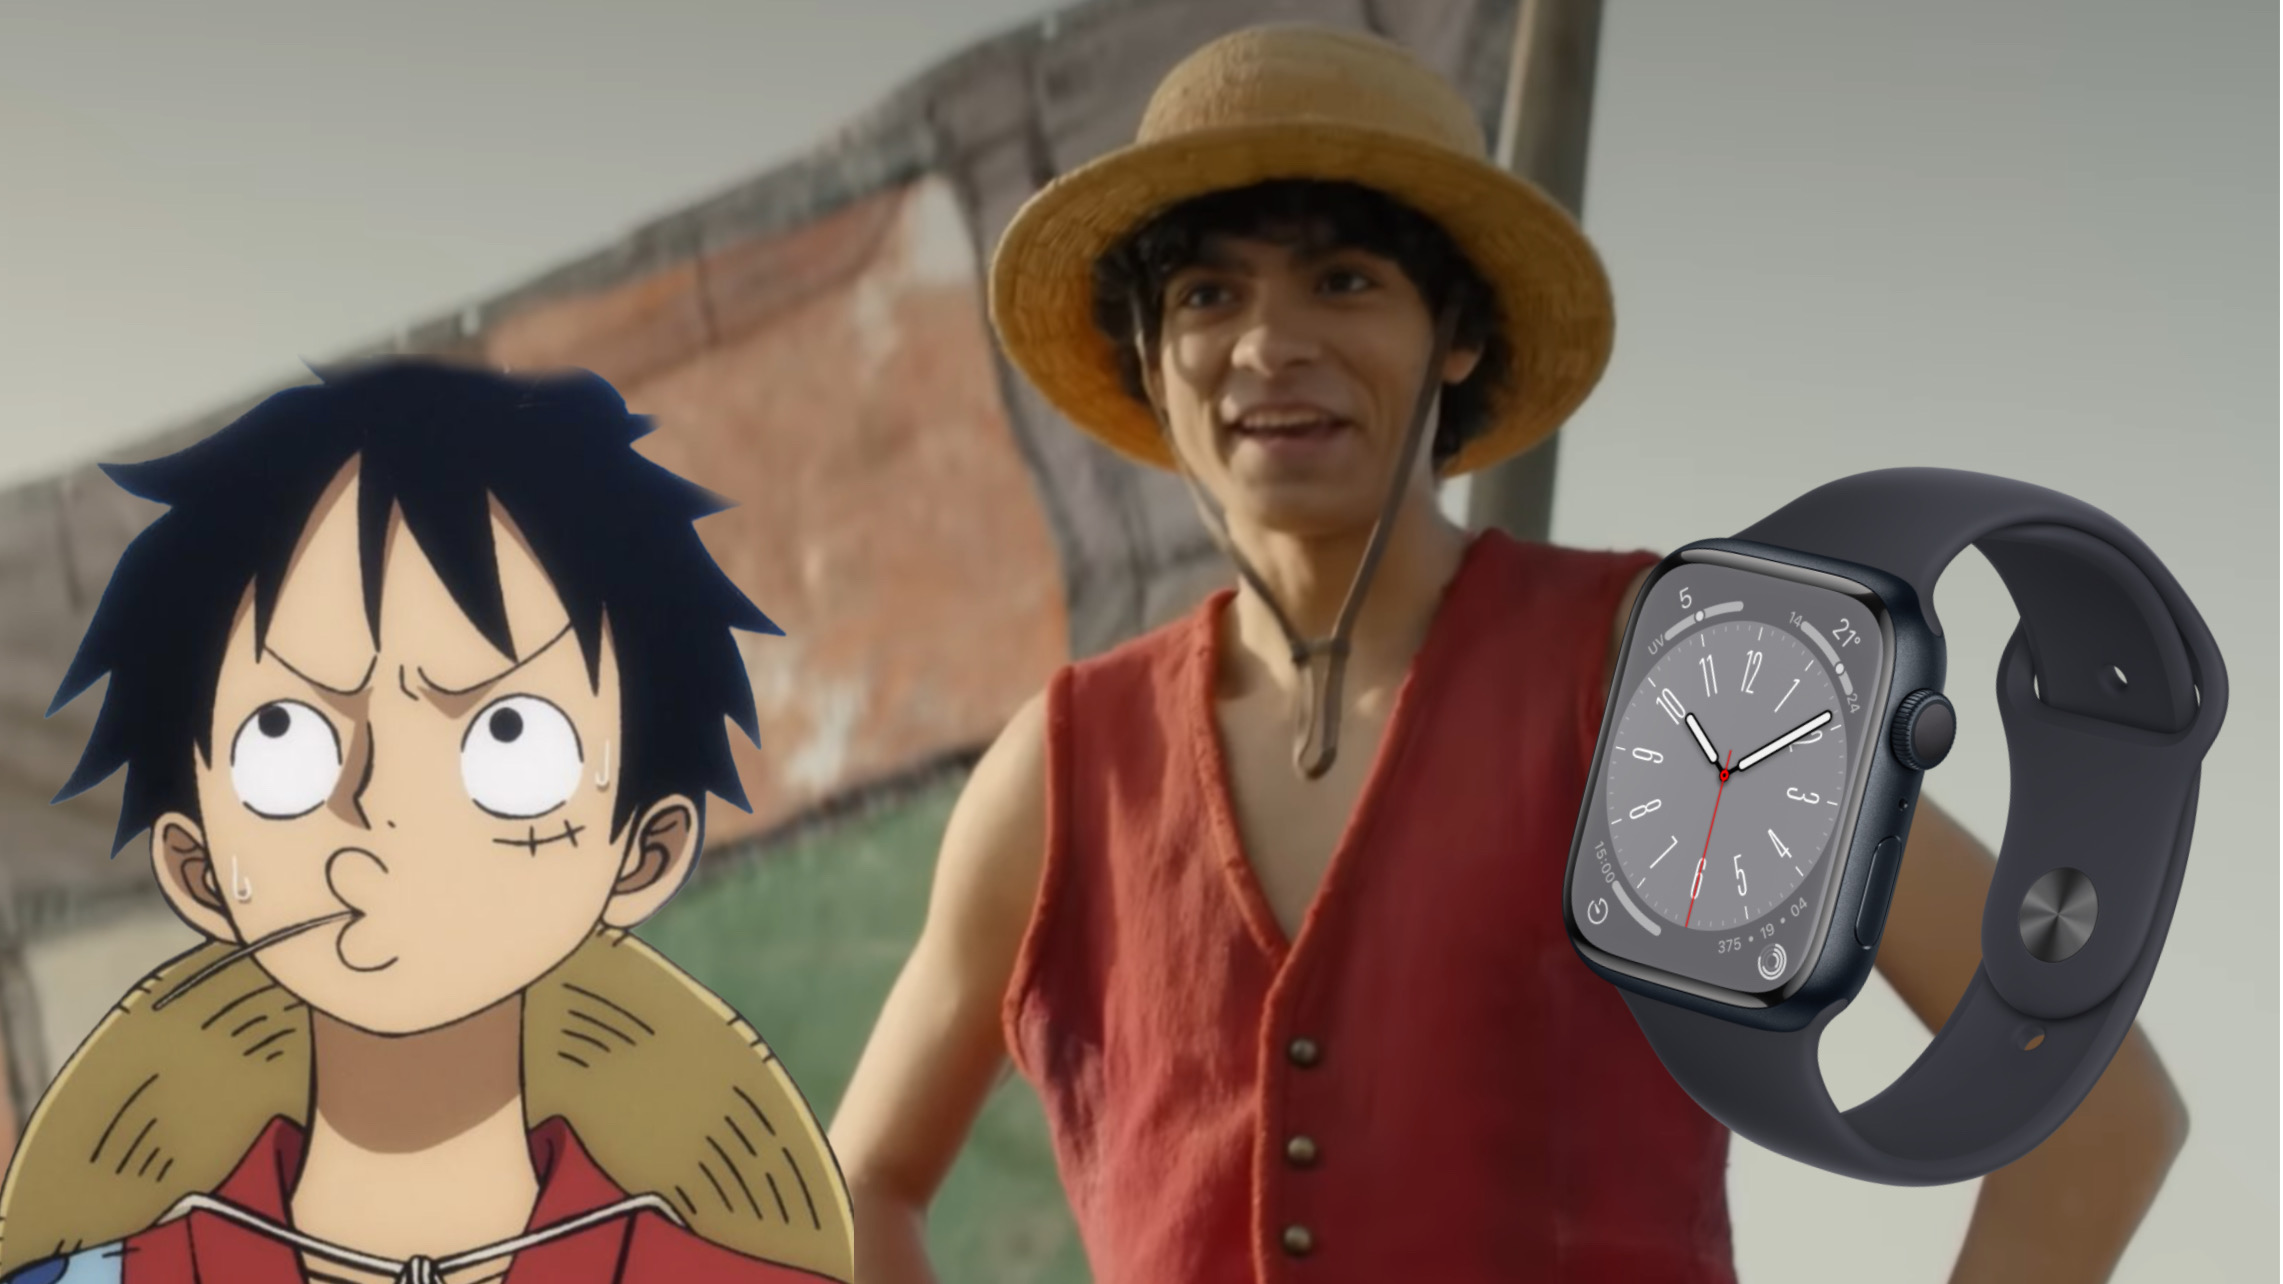 One Piece, è Garp o Don Krieg? Chi è il personaggio del trailer live-action  che crea confusione [SPOILER]